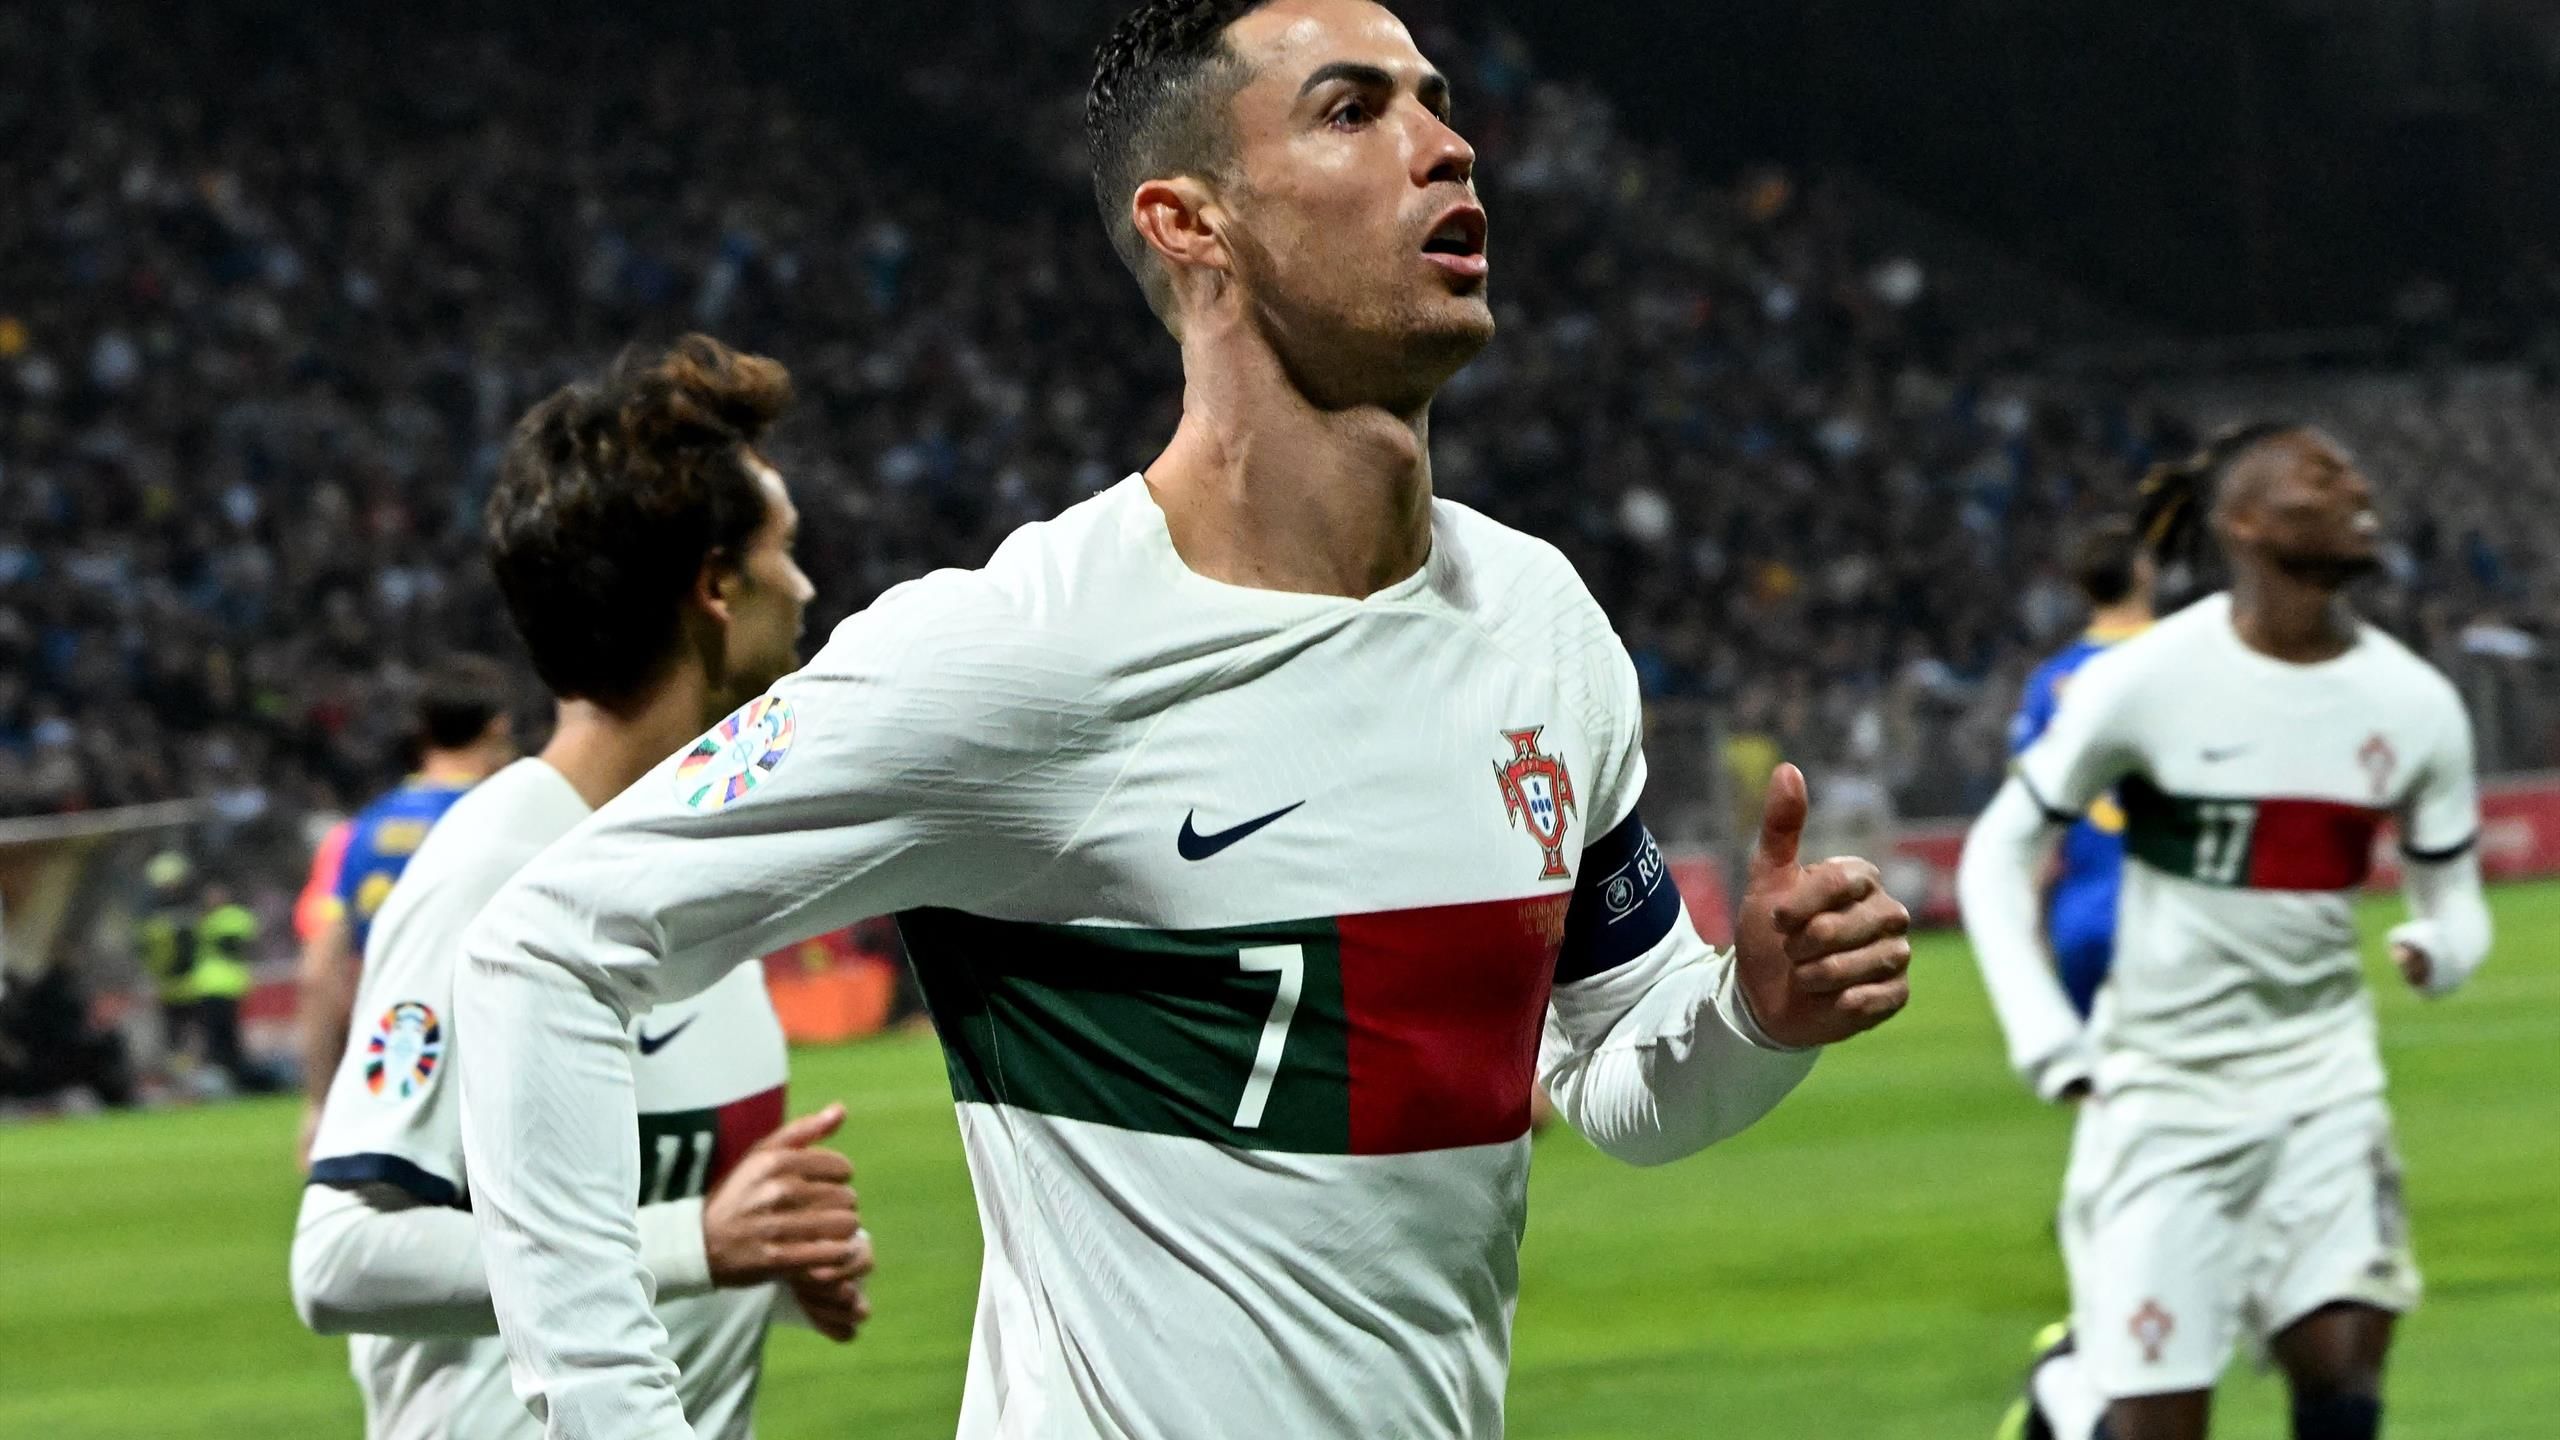 Bósnia e Herzegovina 0-5 Portugal: Cristiano Ronaldo marca dois gols no primeiro tempo, enquanto os visitantes continuam sua seqüência de vitórias